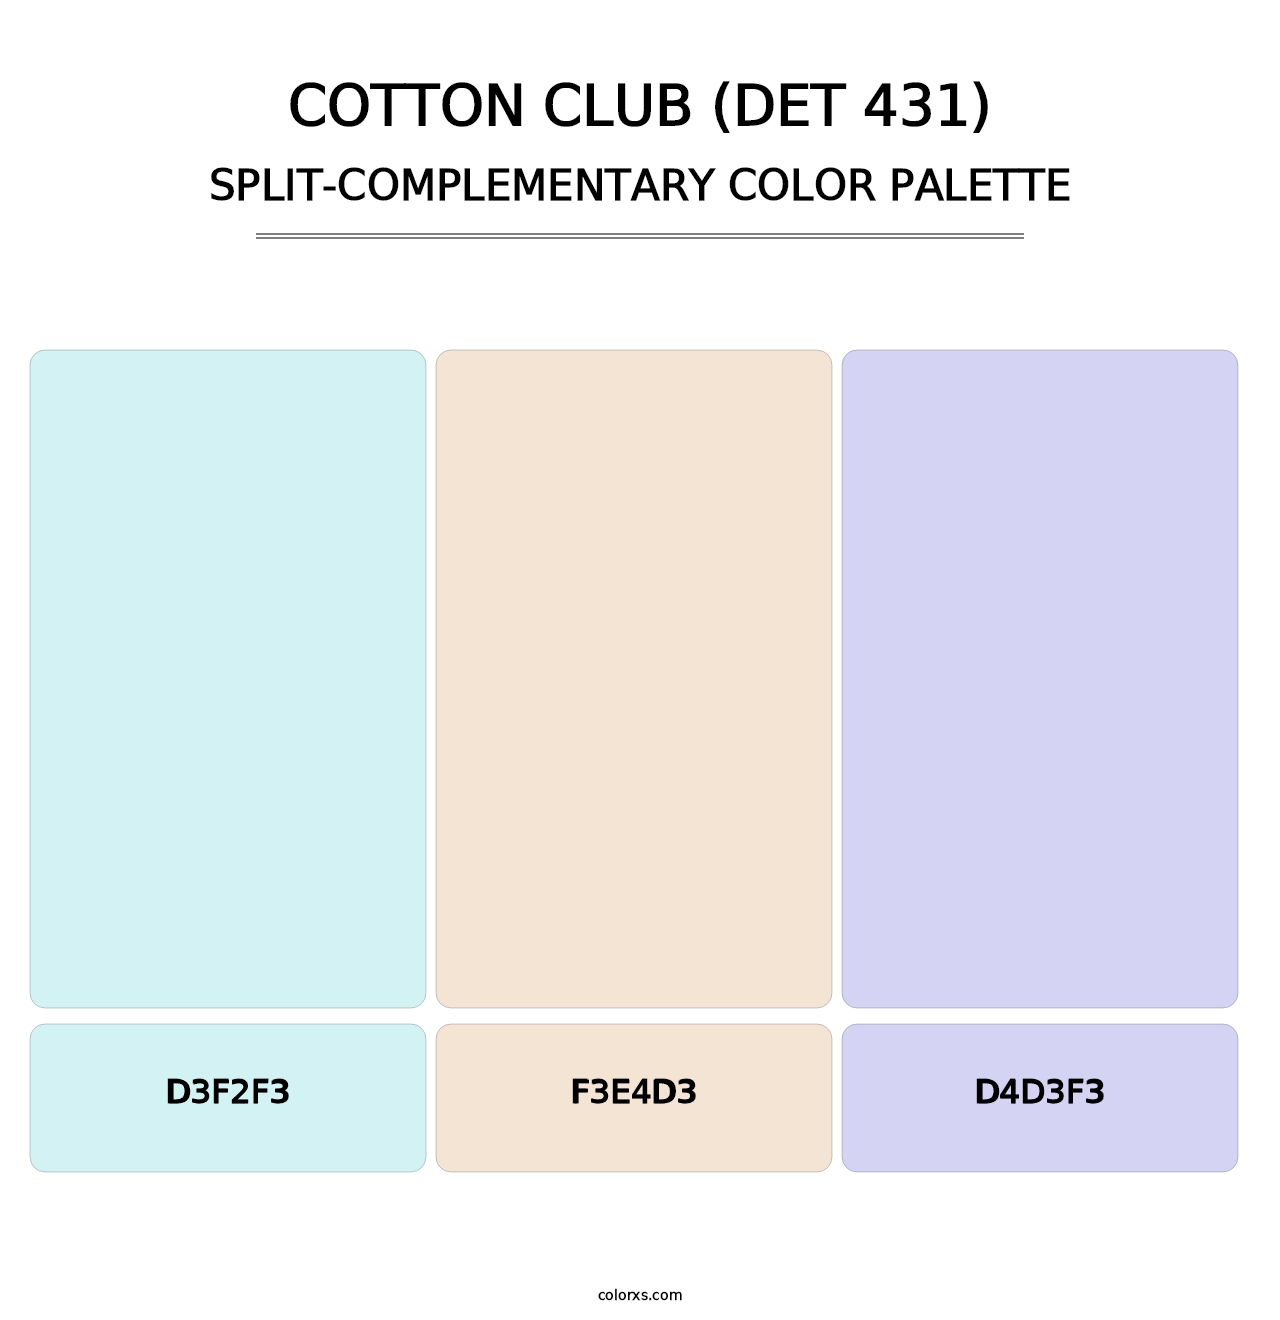 Cotton Club (DET 431) - Split-Complementary Color Palette